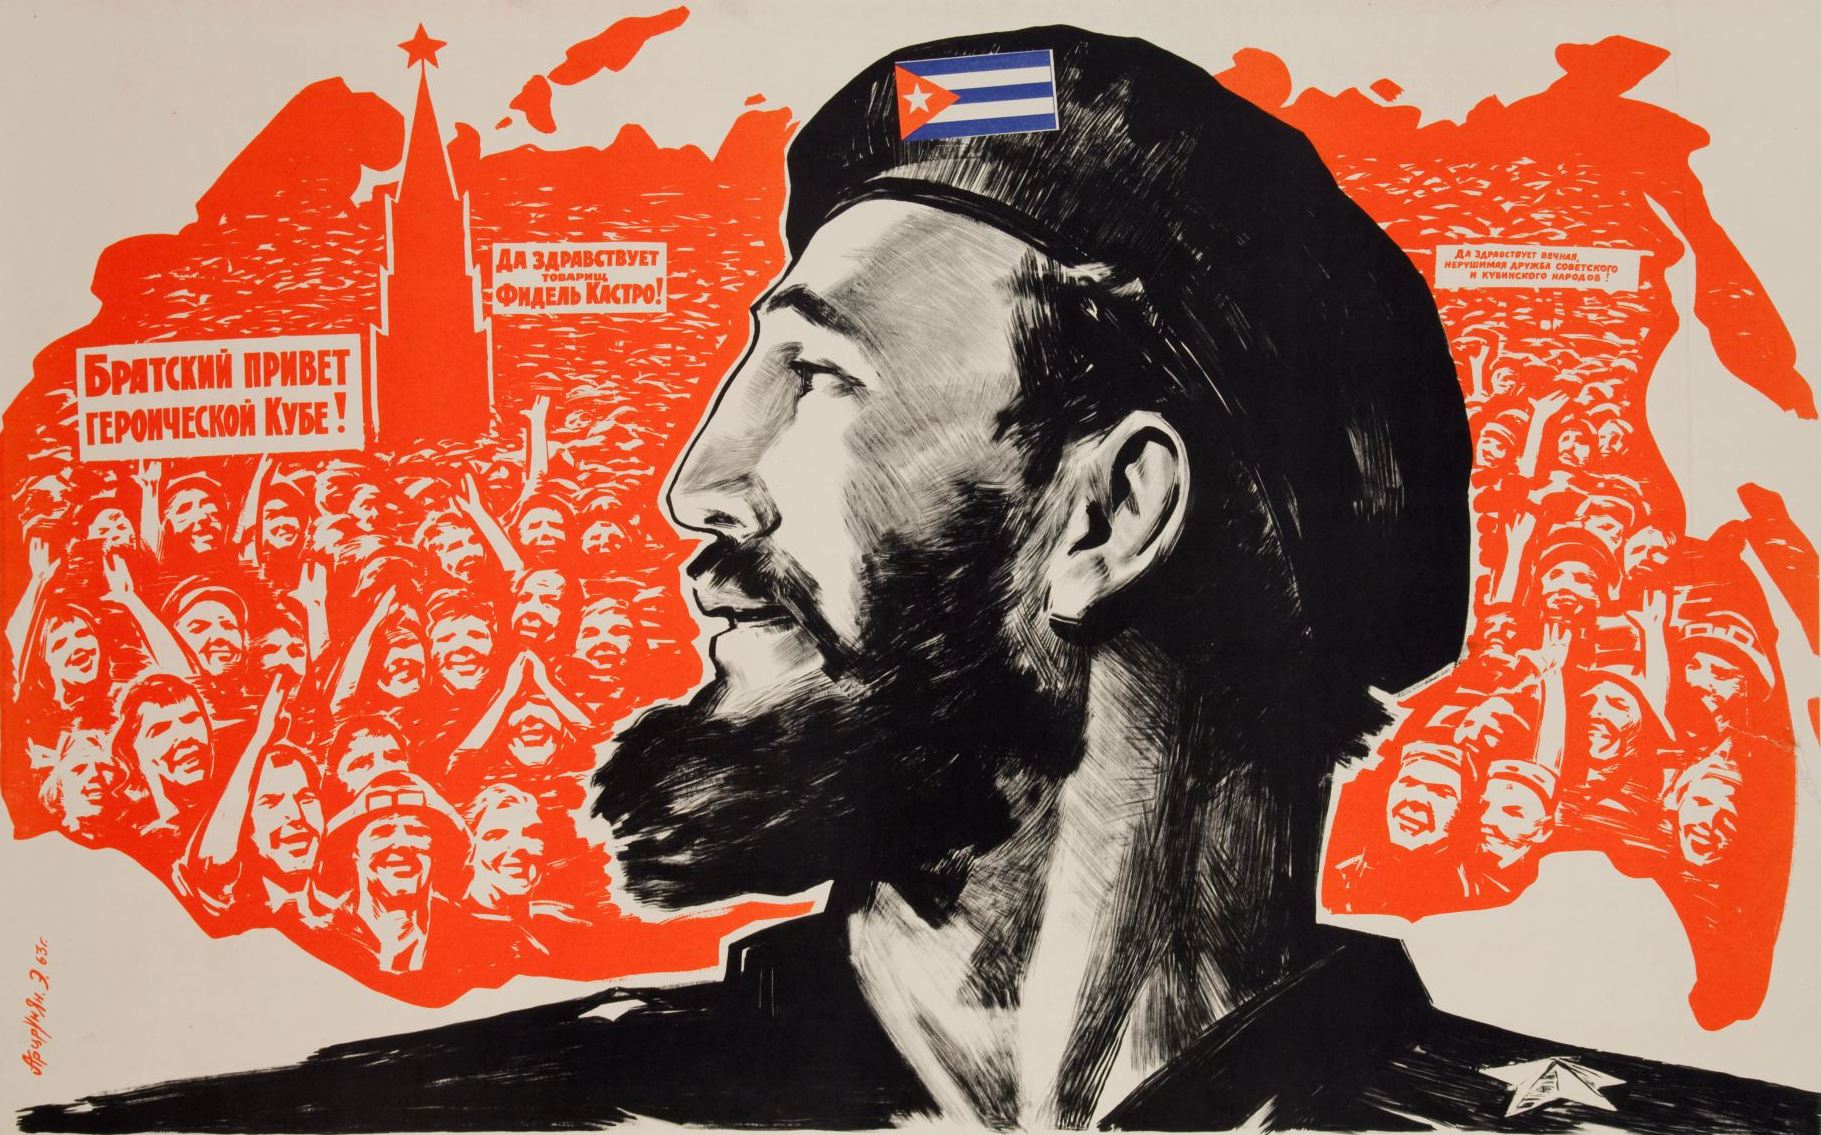 古巴革命者和自由岛居民的肖像 - 在符拉迪沃斯托克的展览中